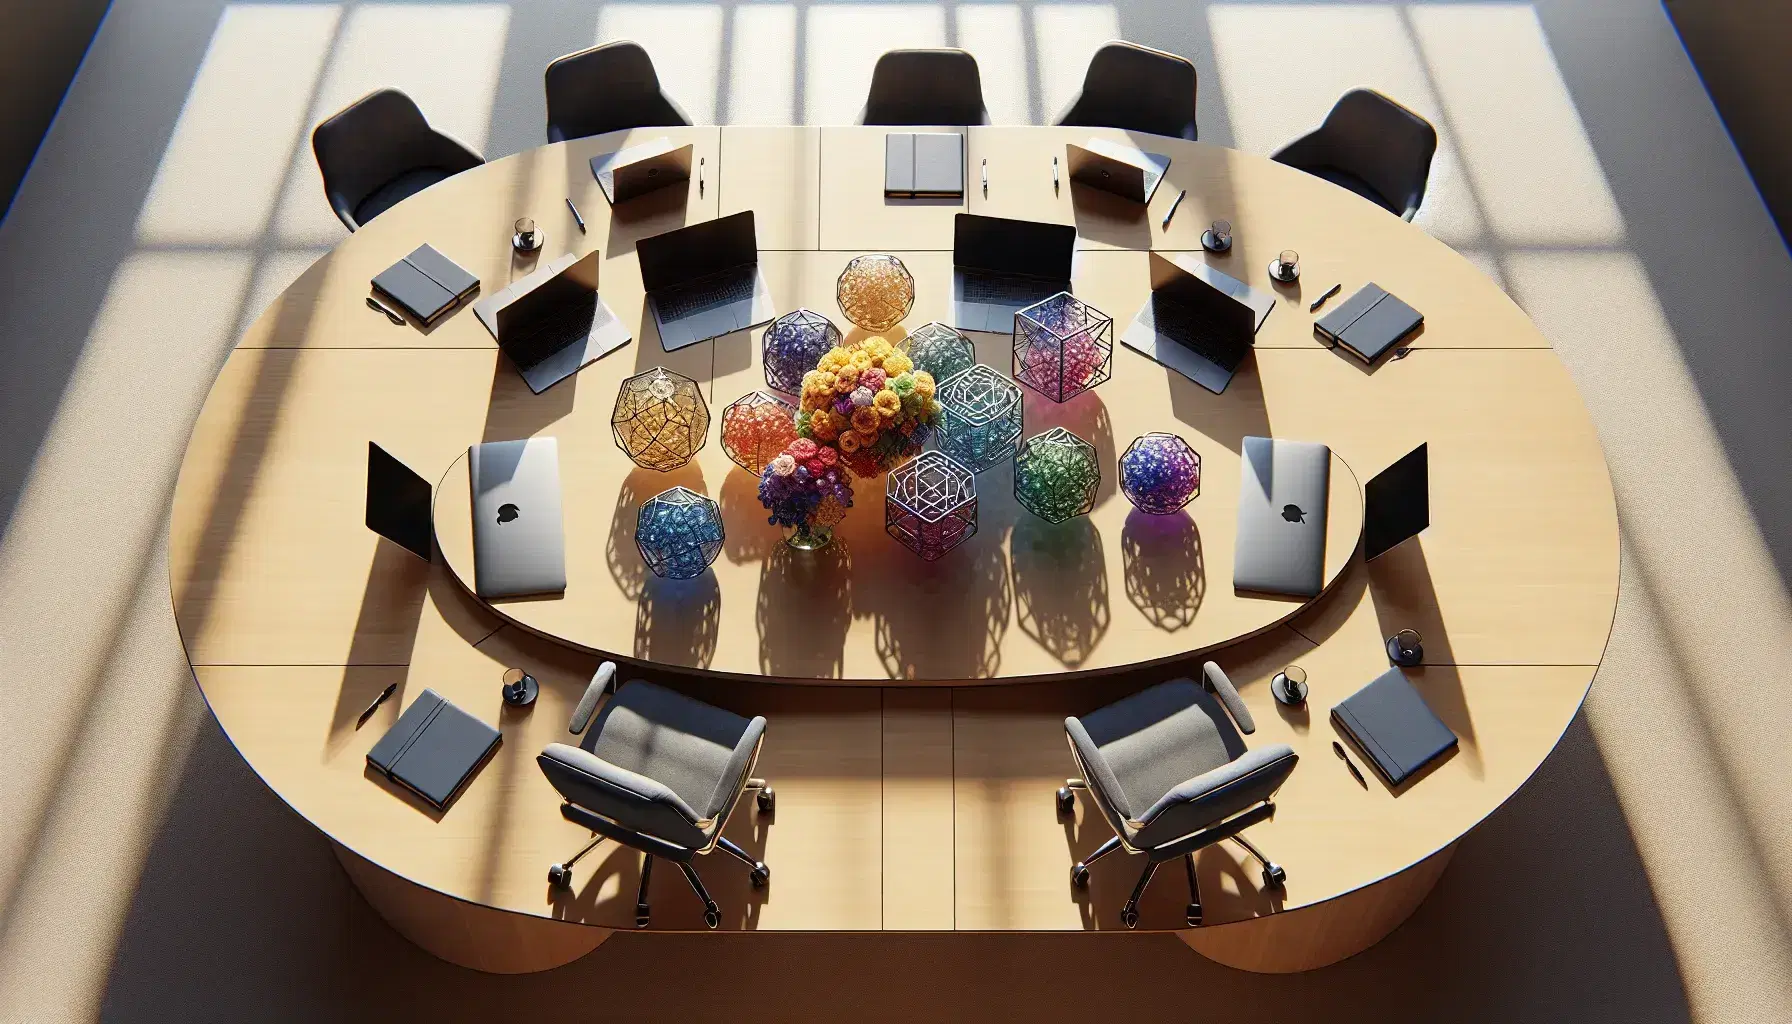 Mesa de reuniones ovalada con superficie de madera clara y seis sillas de oficina azules, laptops cerradas, cuadernos, bolígrafos y arreglo floral central.